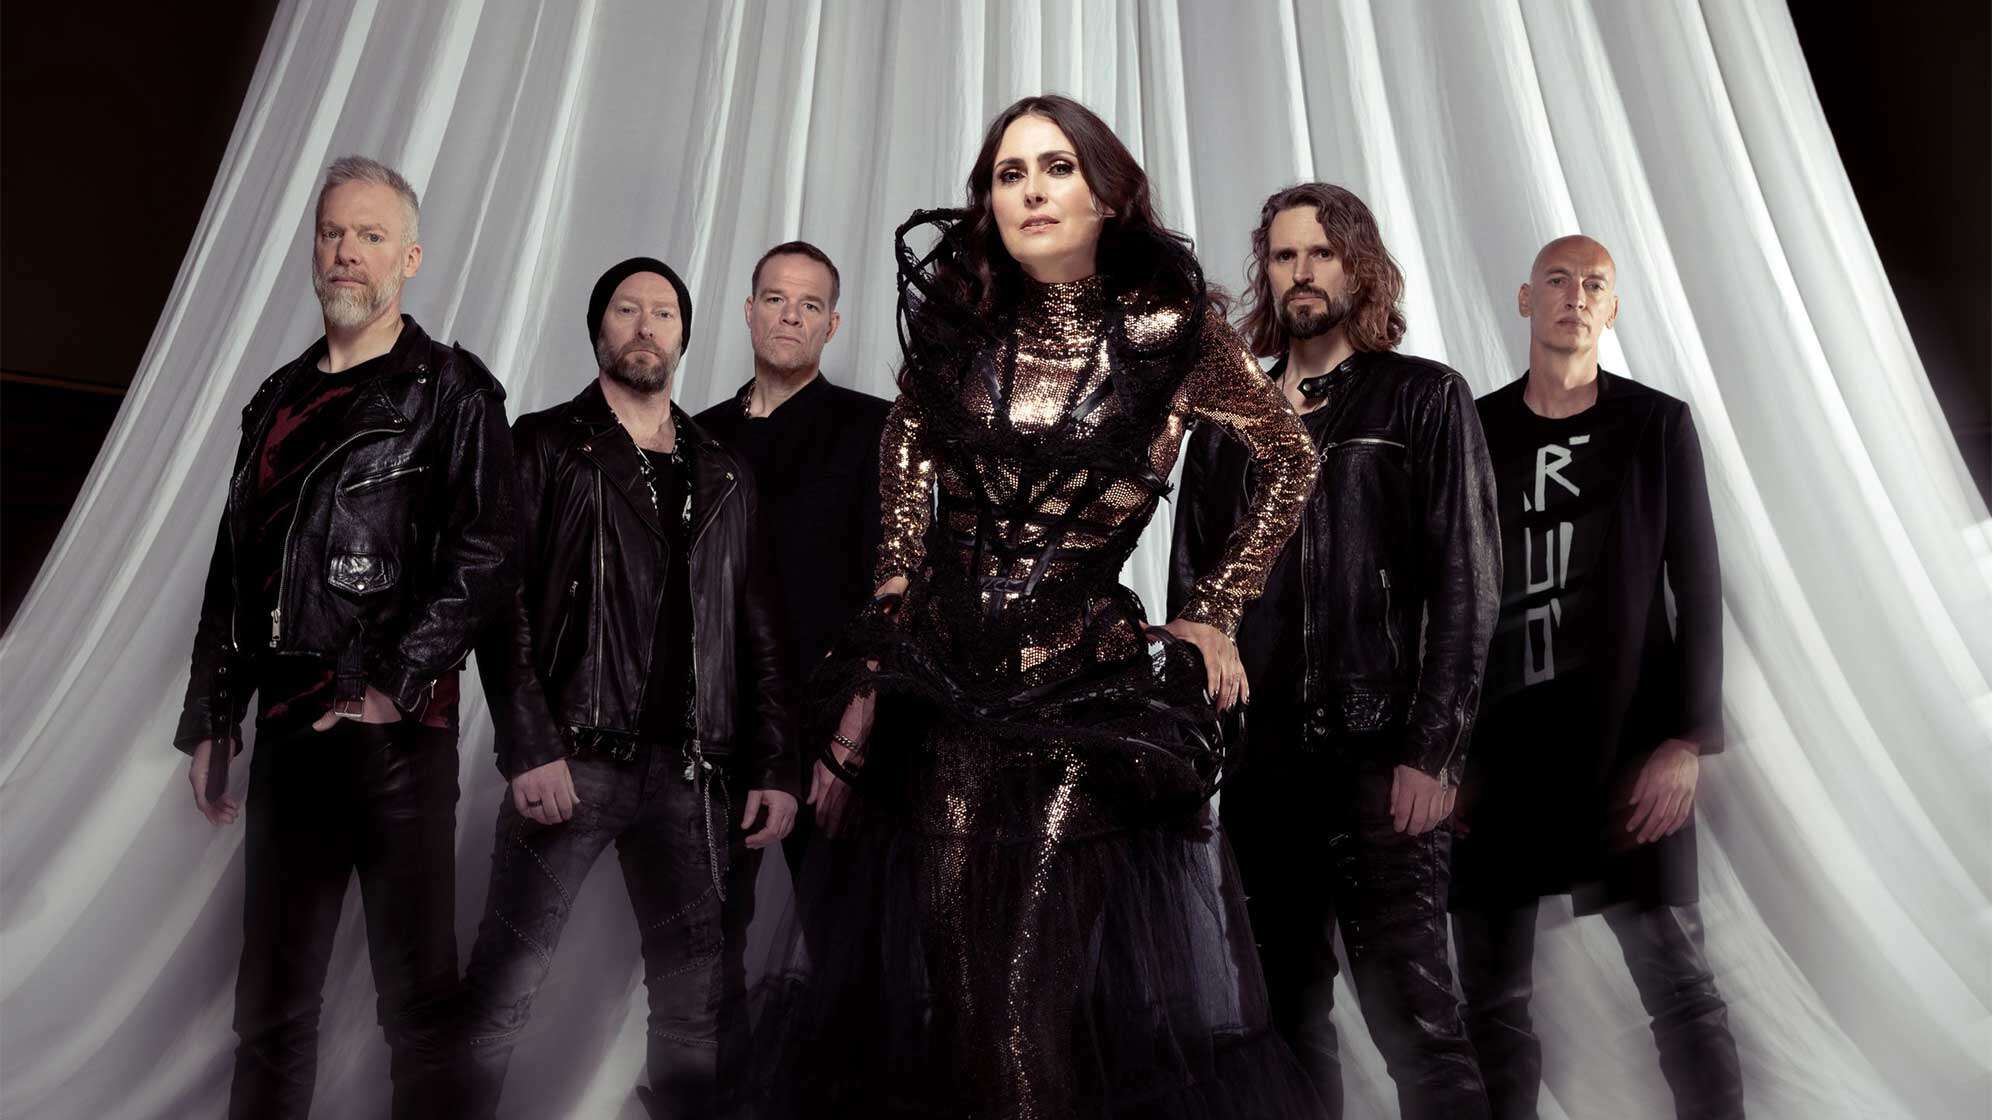 Pressefoto der niederländischen Symphonic Metal Band Within Temptation mit Frontfrau Sharon den Adel aus dem Jahr 2023